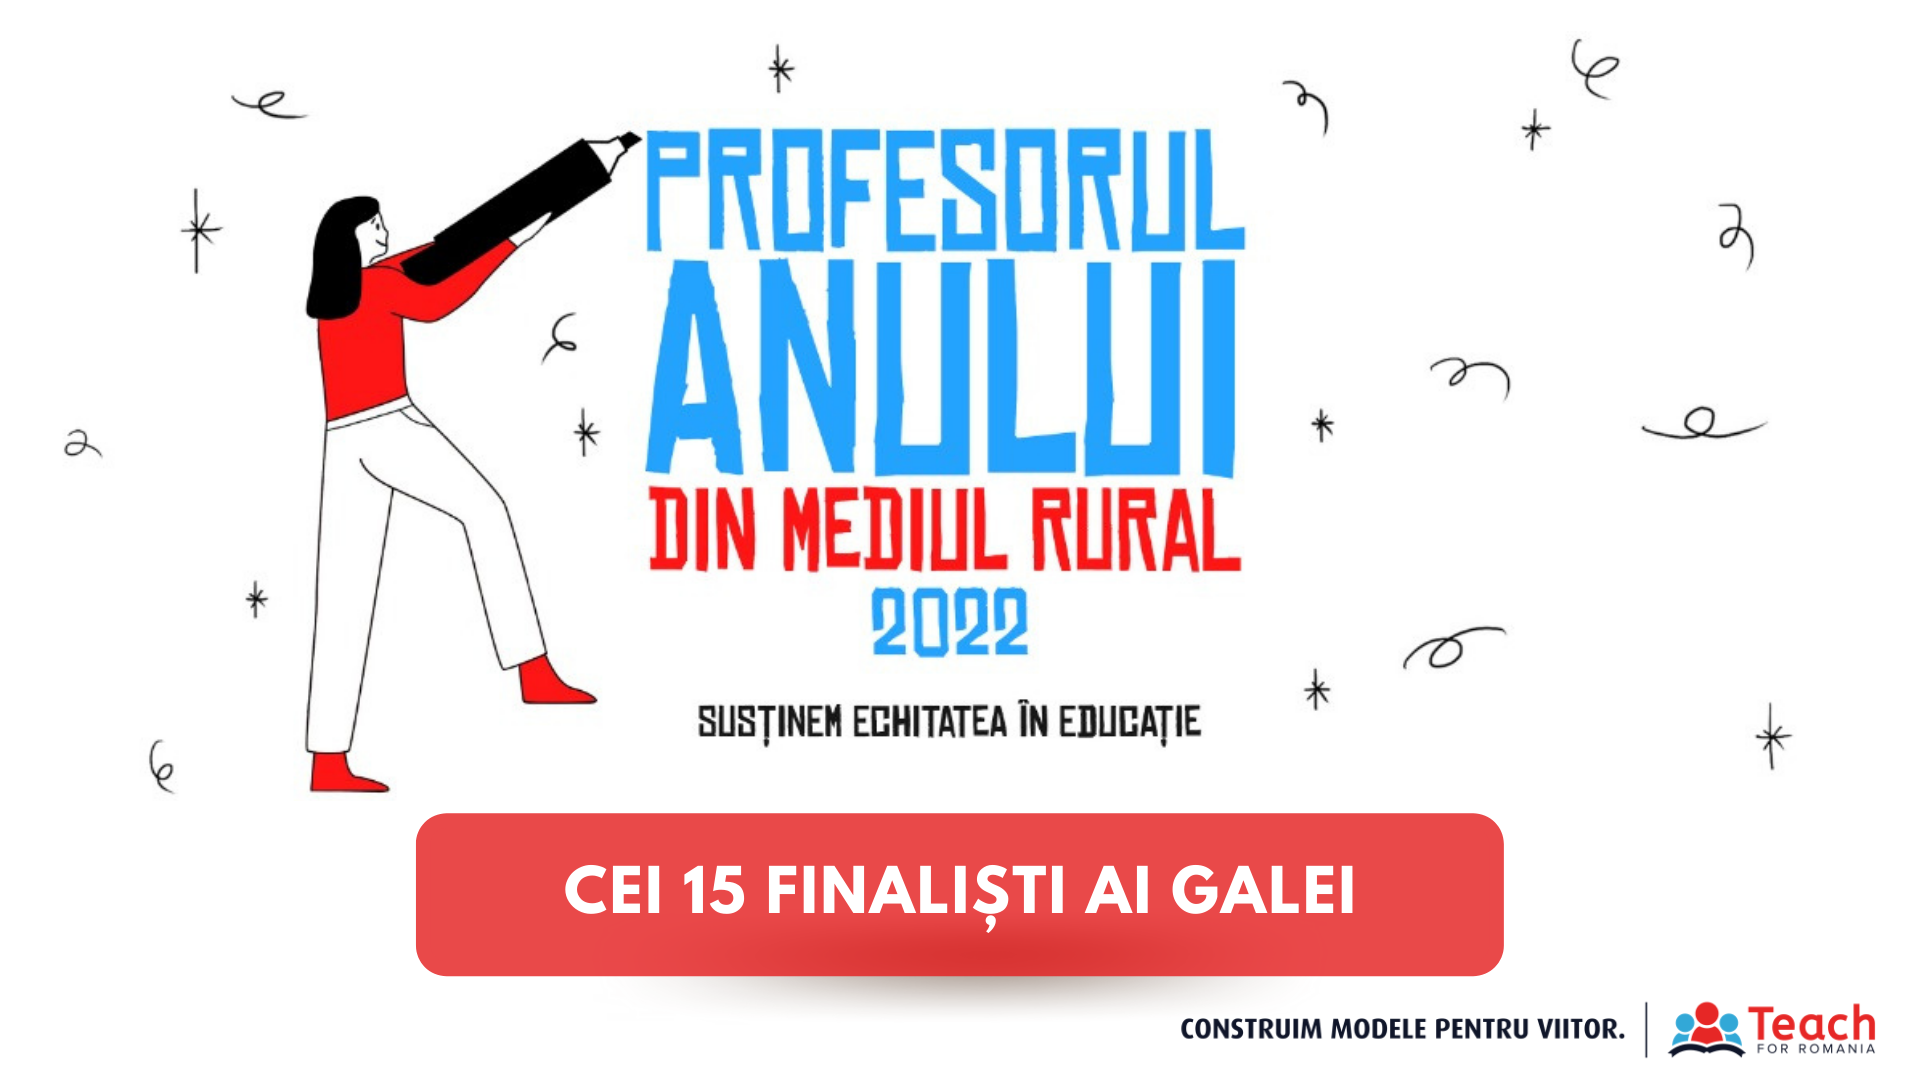  Teach for Romania anunță cei 15 finaliști ai Galei Profesorul Anului din mediul rural 